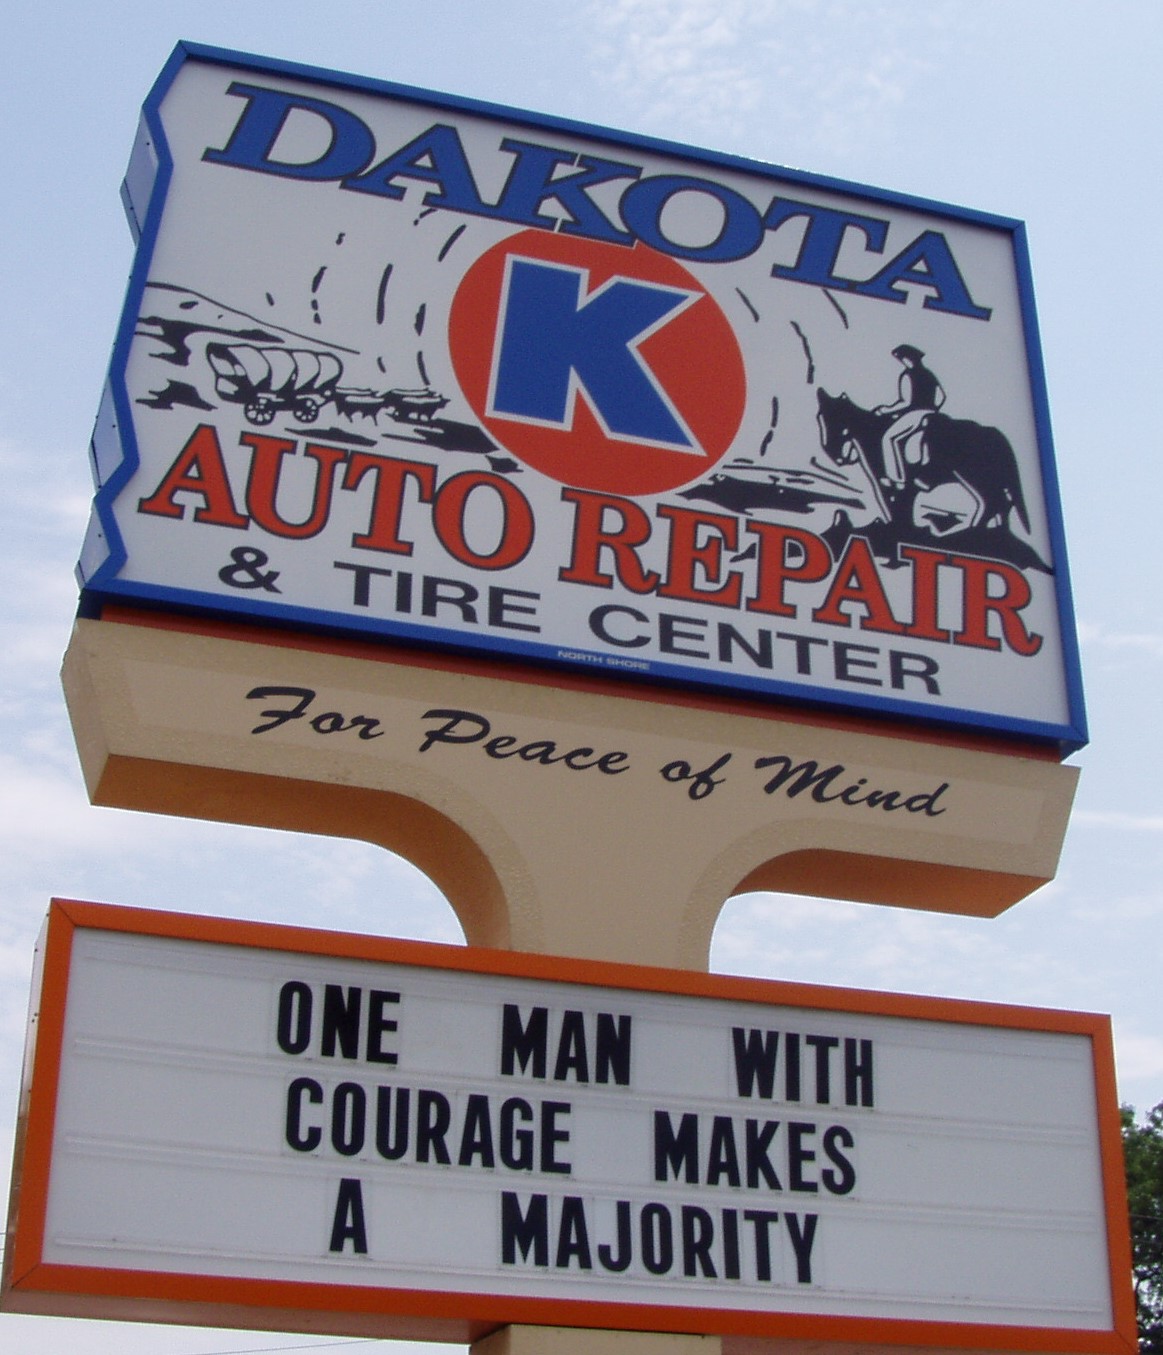 Dakota K Auto Repair & Tire Center